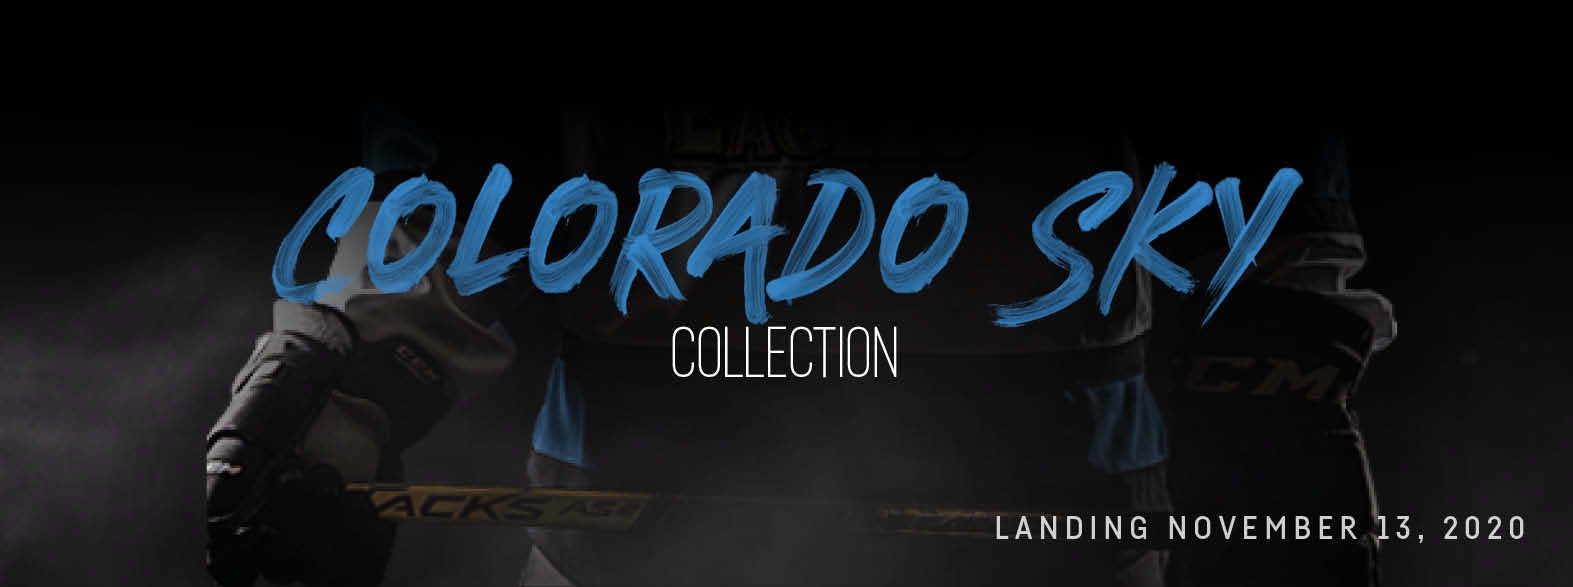 Colorado Eagles unveil new 'Colorado Sky' jerseys - Colorado